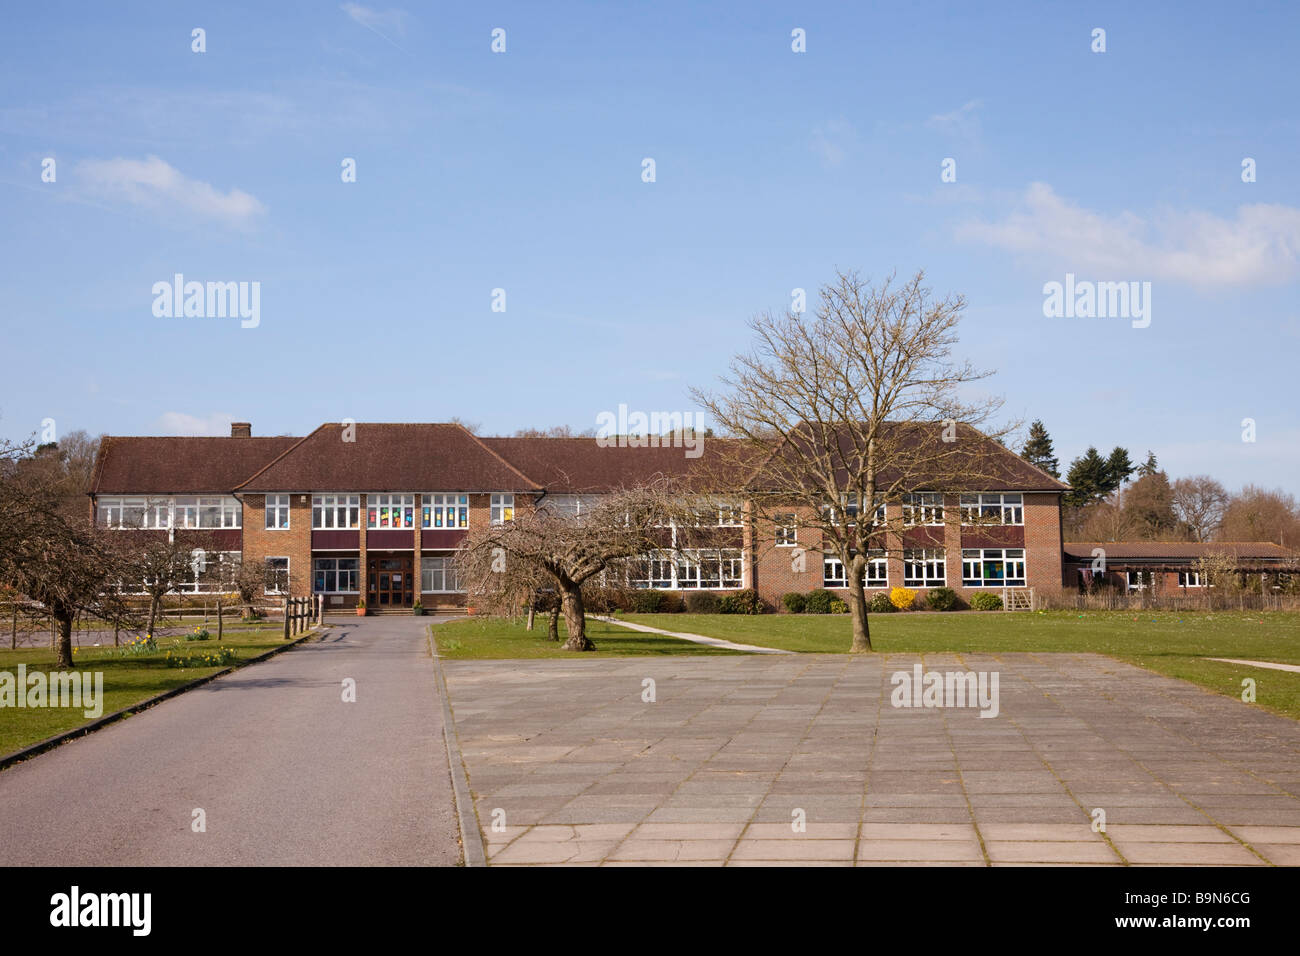 Façade du bâtiment de l'école primaire moderne de l'église d'Angleterre, extérieur et terrain avec longue allée. Tilford Surrey Angleterre Royaume-Uni Banque D'Images